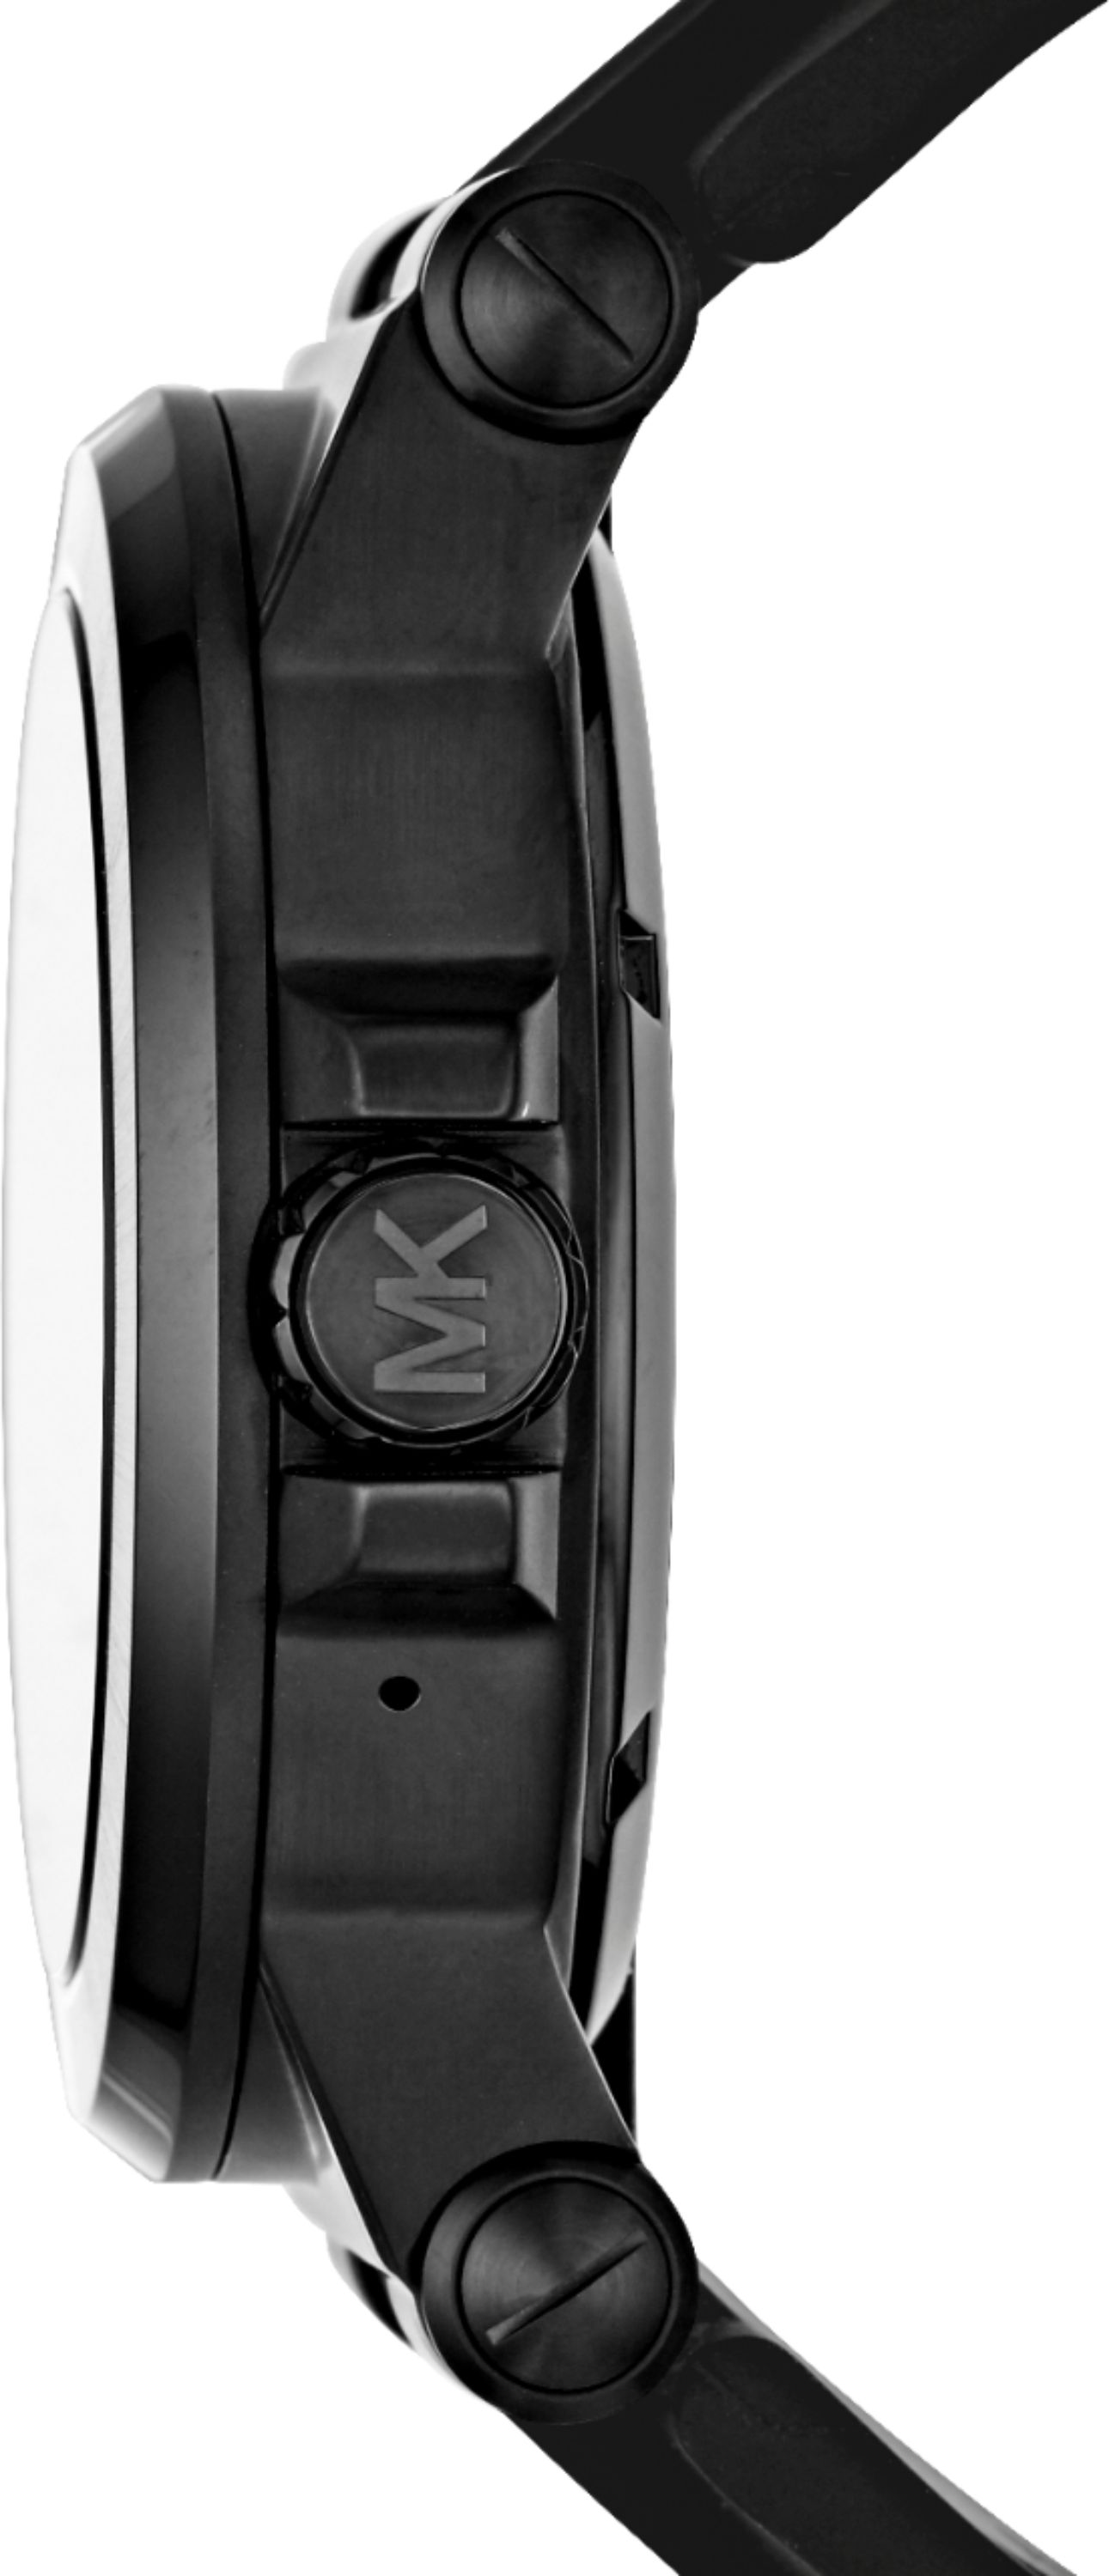 michael kors mkt5011 smartwatch